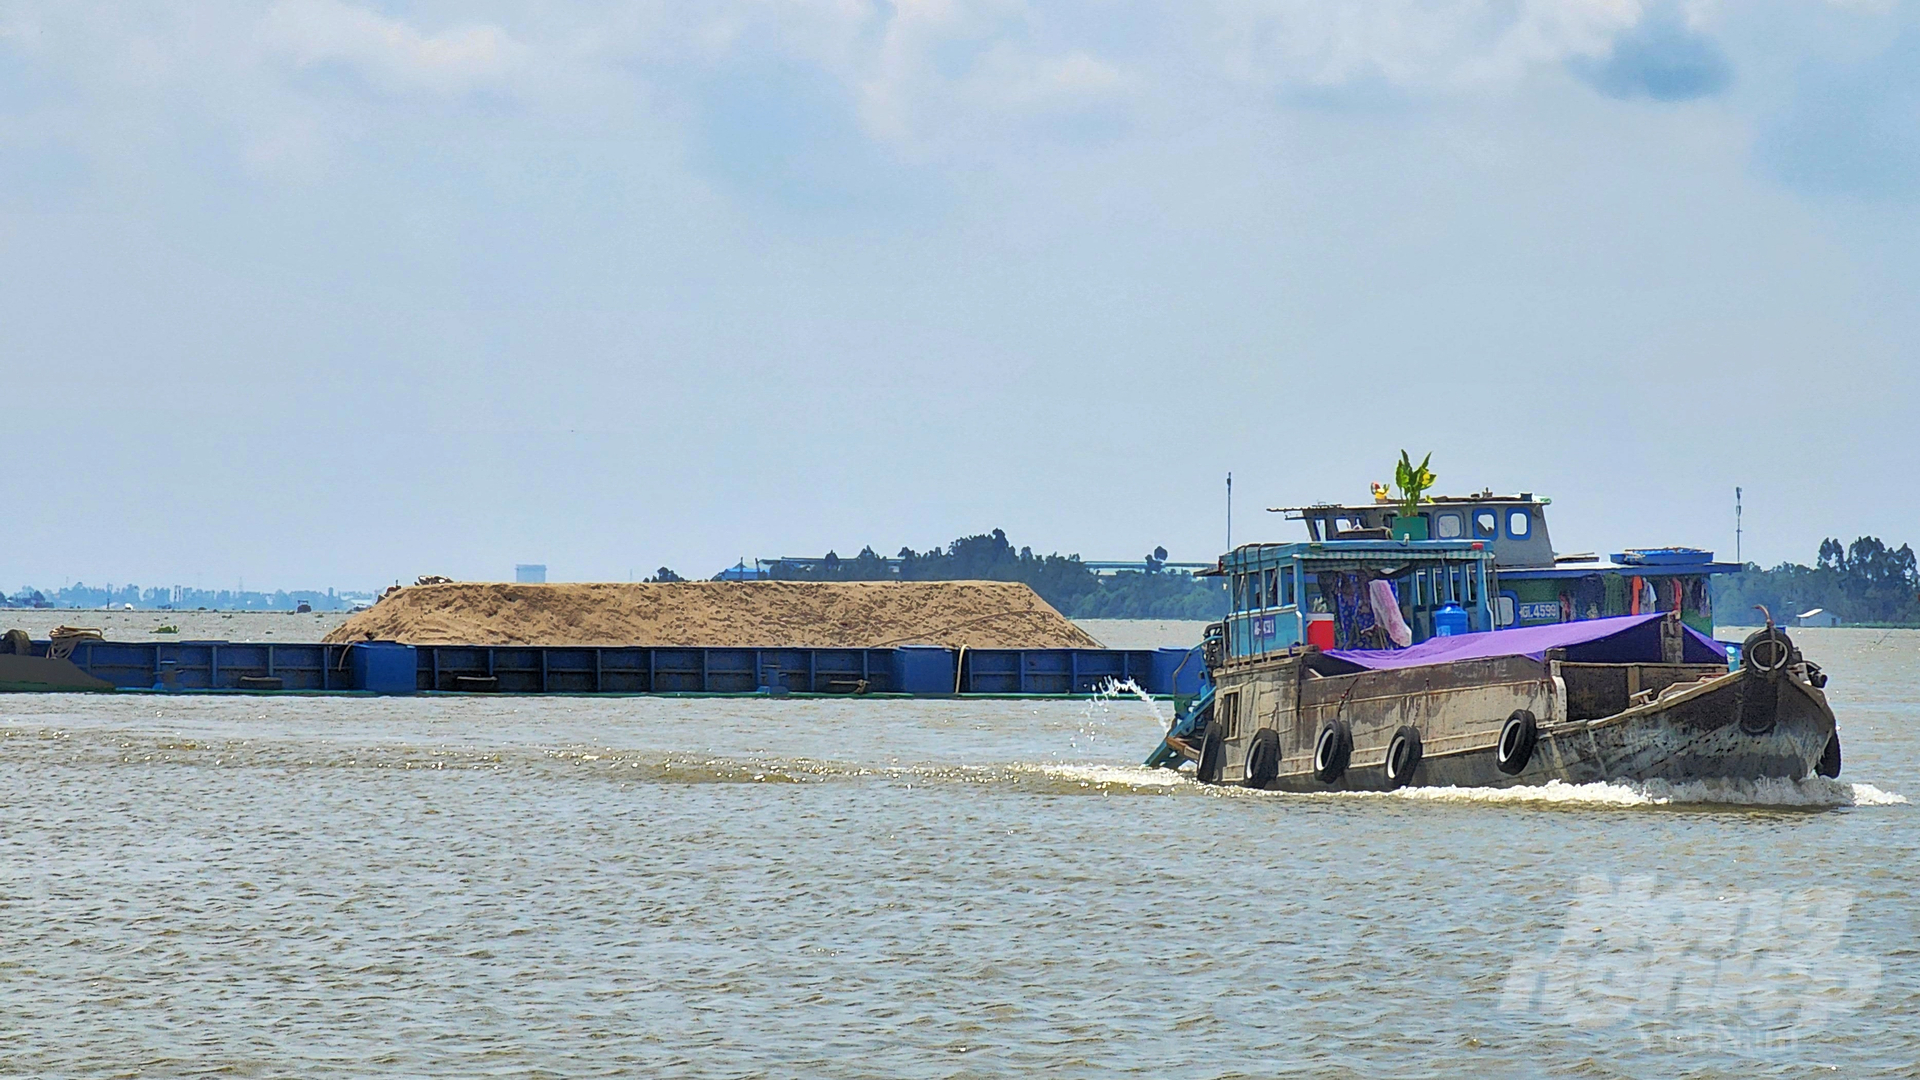 Những phát hiện khoa học gần đây chứng minh, xói mòn lòng, bờ sông, bờ biển và xâm nhập mặn chủ yếu do thiếu hụt trầm tích, xuất phát từ việc phát triển thủy điện ở thượng nguồn lưu vực sông Mekong và hoạt động khai thác cát. Ảnh: Kim Anh.